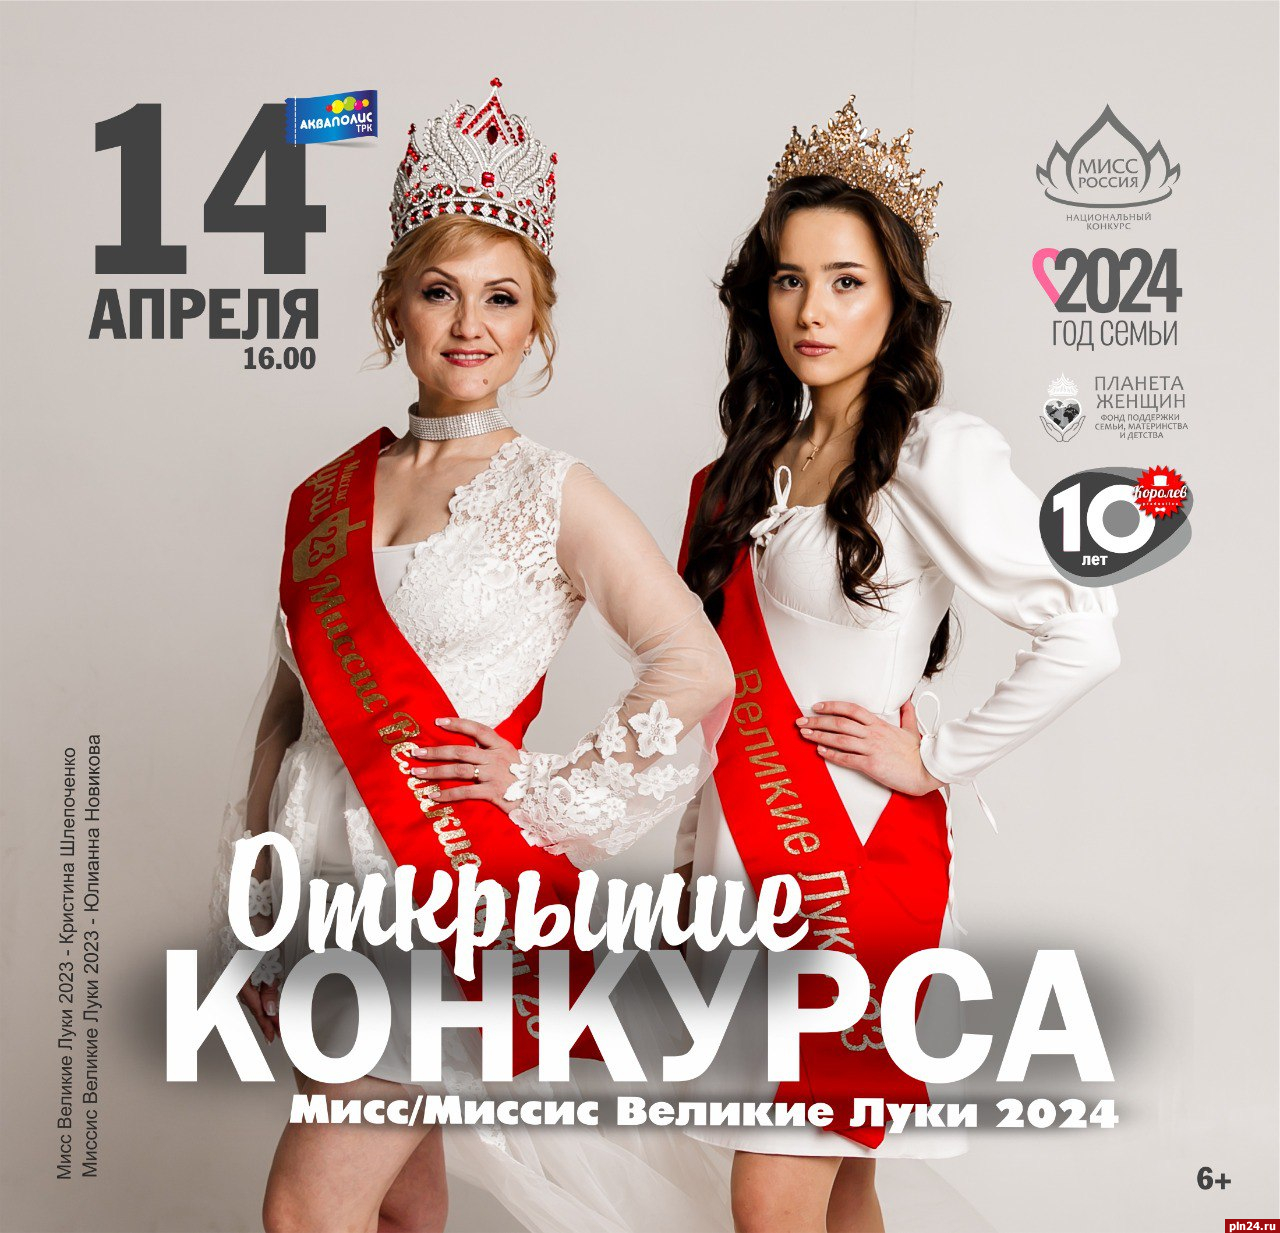 Официальное открытие фестиваля «Мисс и Миссис Великие Луки 2024» состоится в Пскове